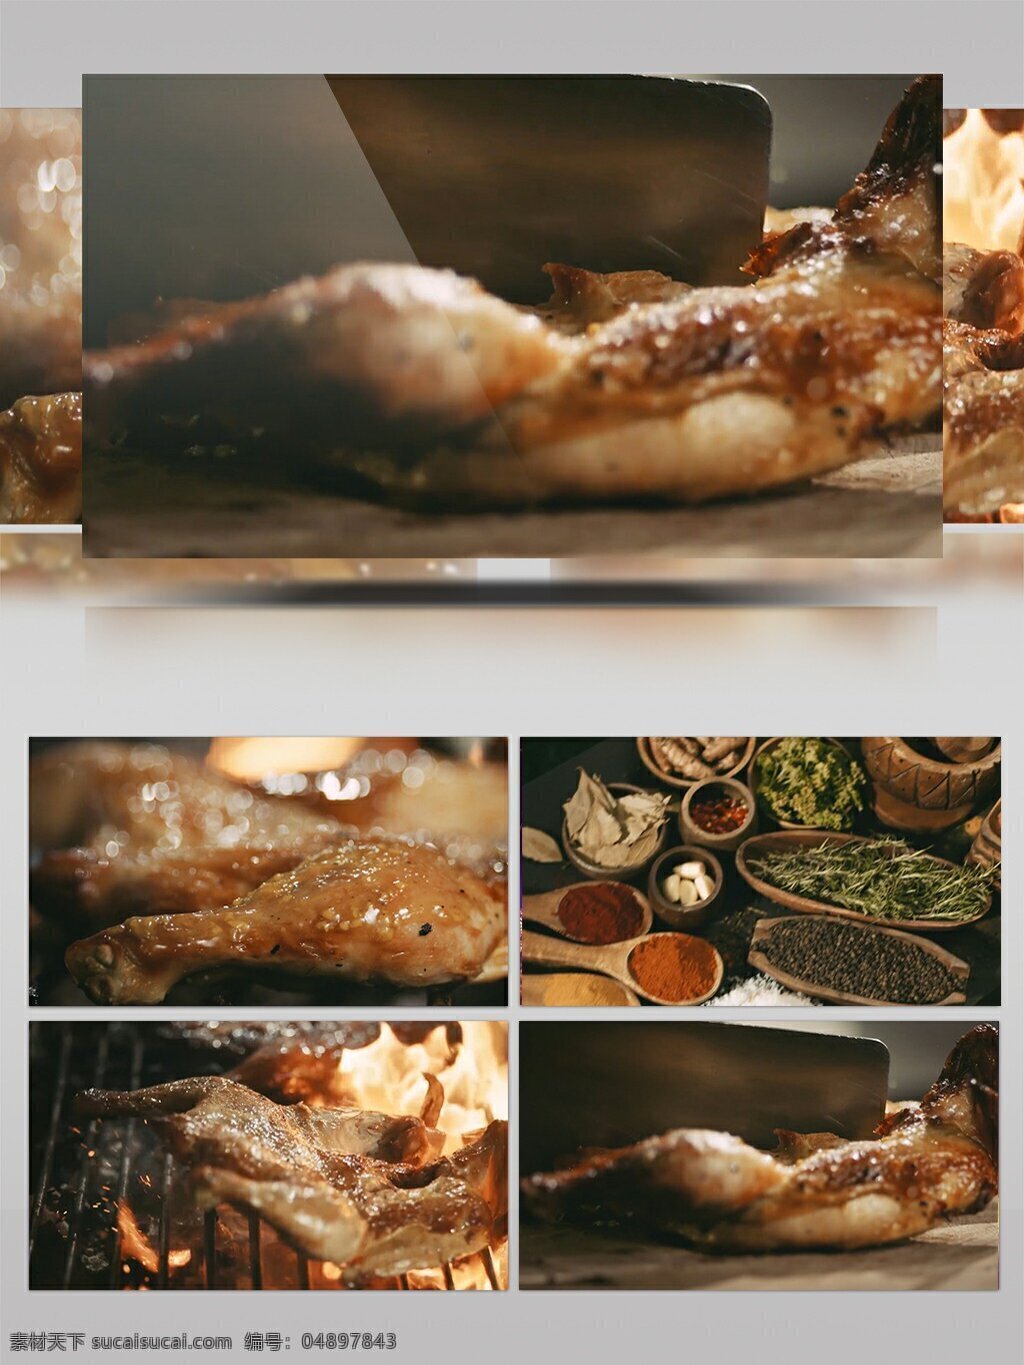 美食 烤 鹅 烤鸭 制作 视频 美食制作 烤鹅 柠檬汁 食材 食物 美味 酒店食品 烤鸭制作